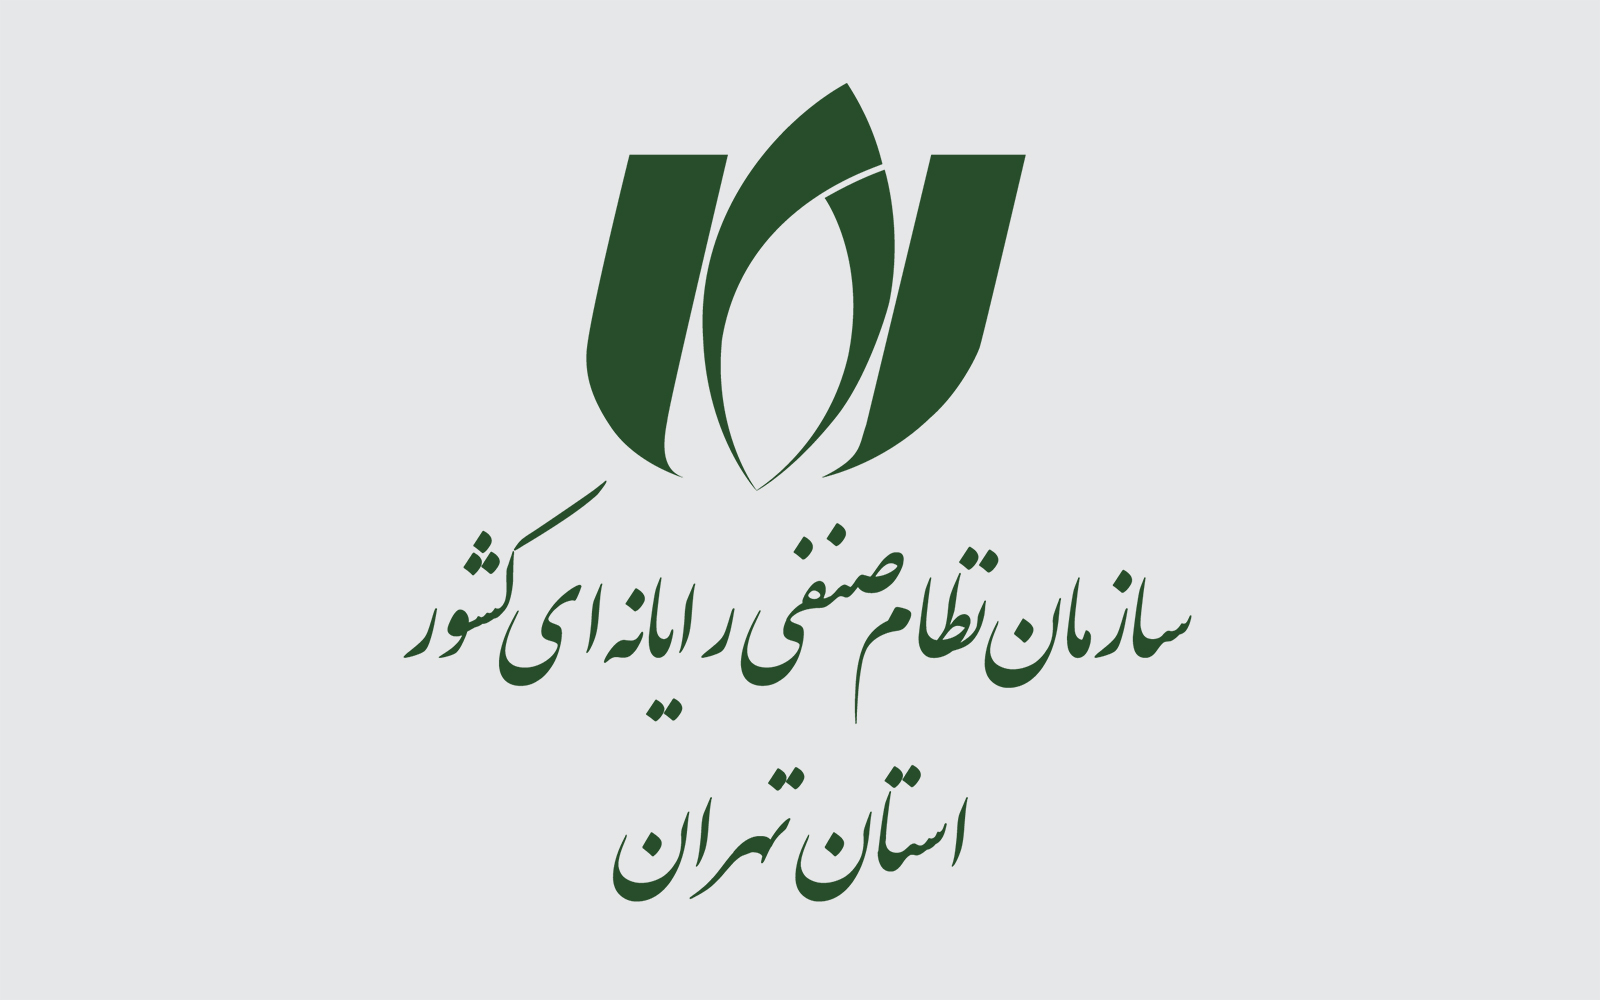 اطلاعیه شماره 1 سازمان نصر تهران در خصوص دریافت ثبت سفارش و اخذ کد تخصیص از بانک مرکزی